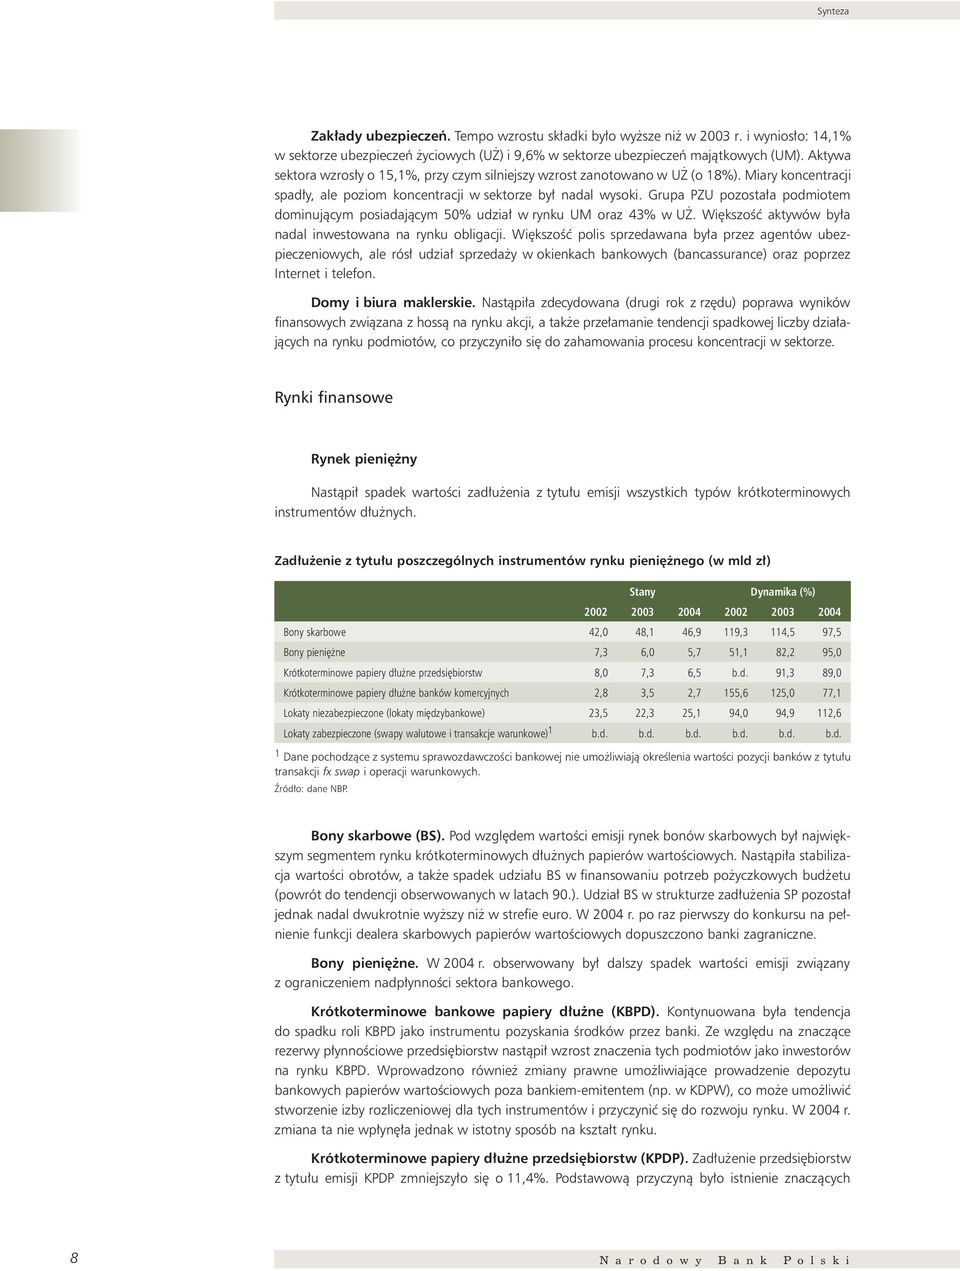 Grupa PZU pozosta a podmiotem dominujàcym posiadajàcym % udzia w rynku UM oraz 43% w U. Wi kszoêç aktywów by a nadal inwestowana na rynku obligacji.